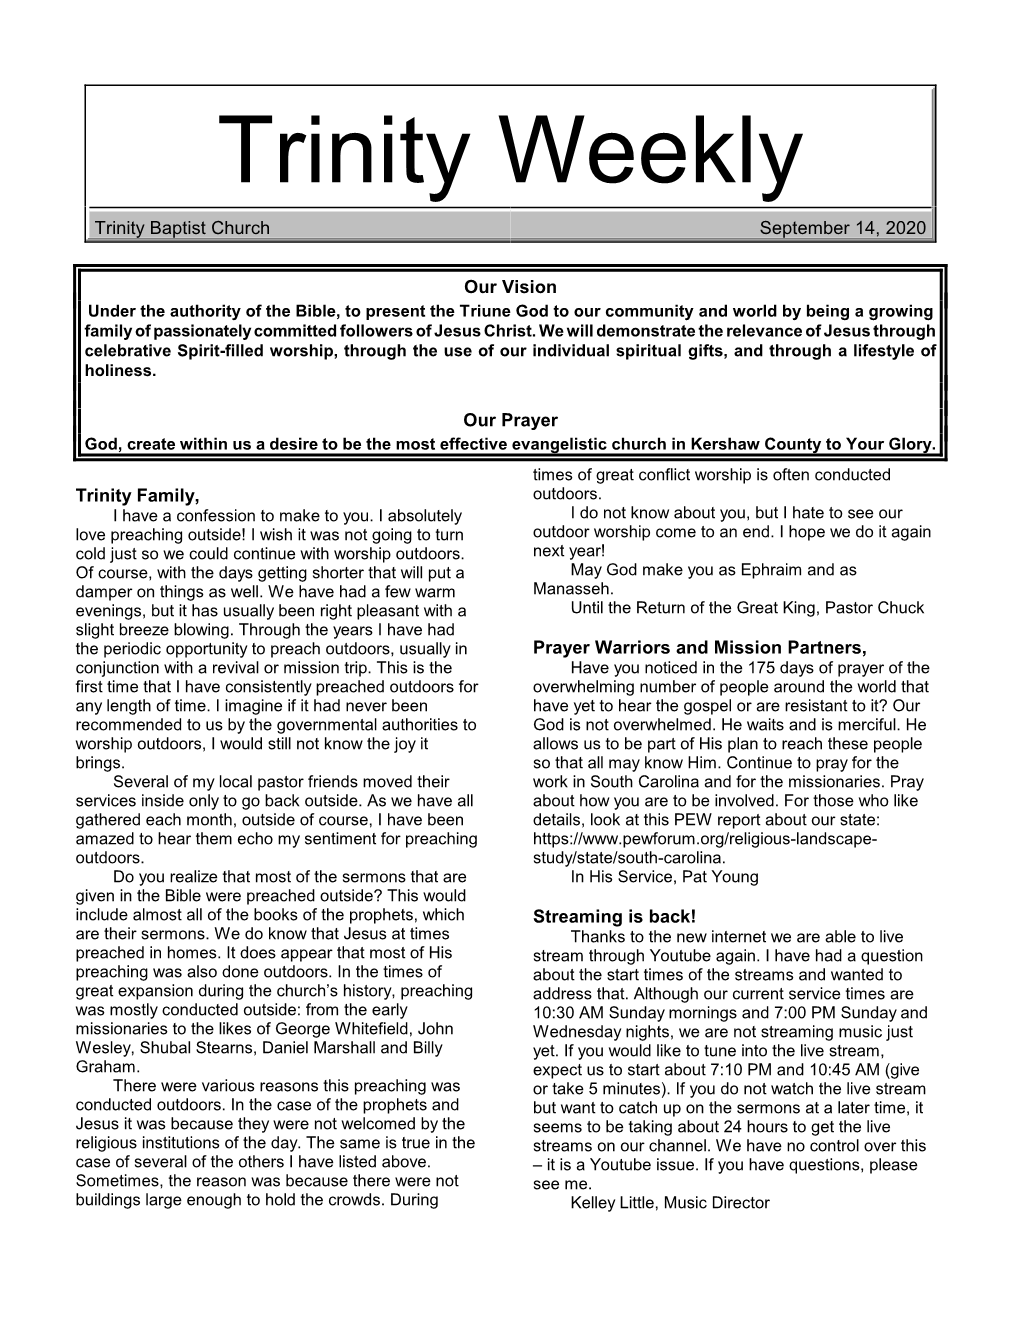 Trinity Weekly Trinity Baptist Church September 14, 2020